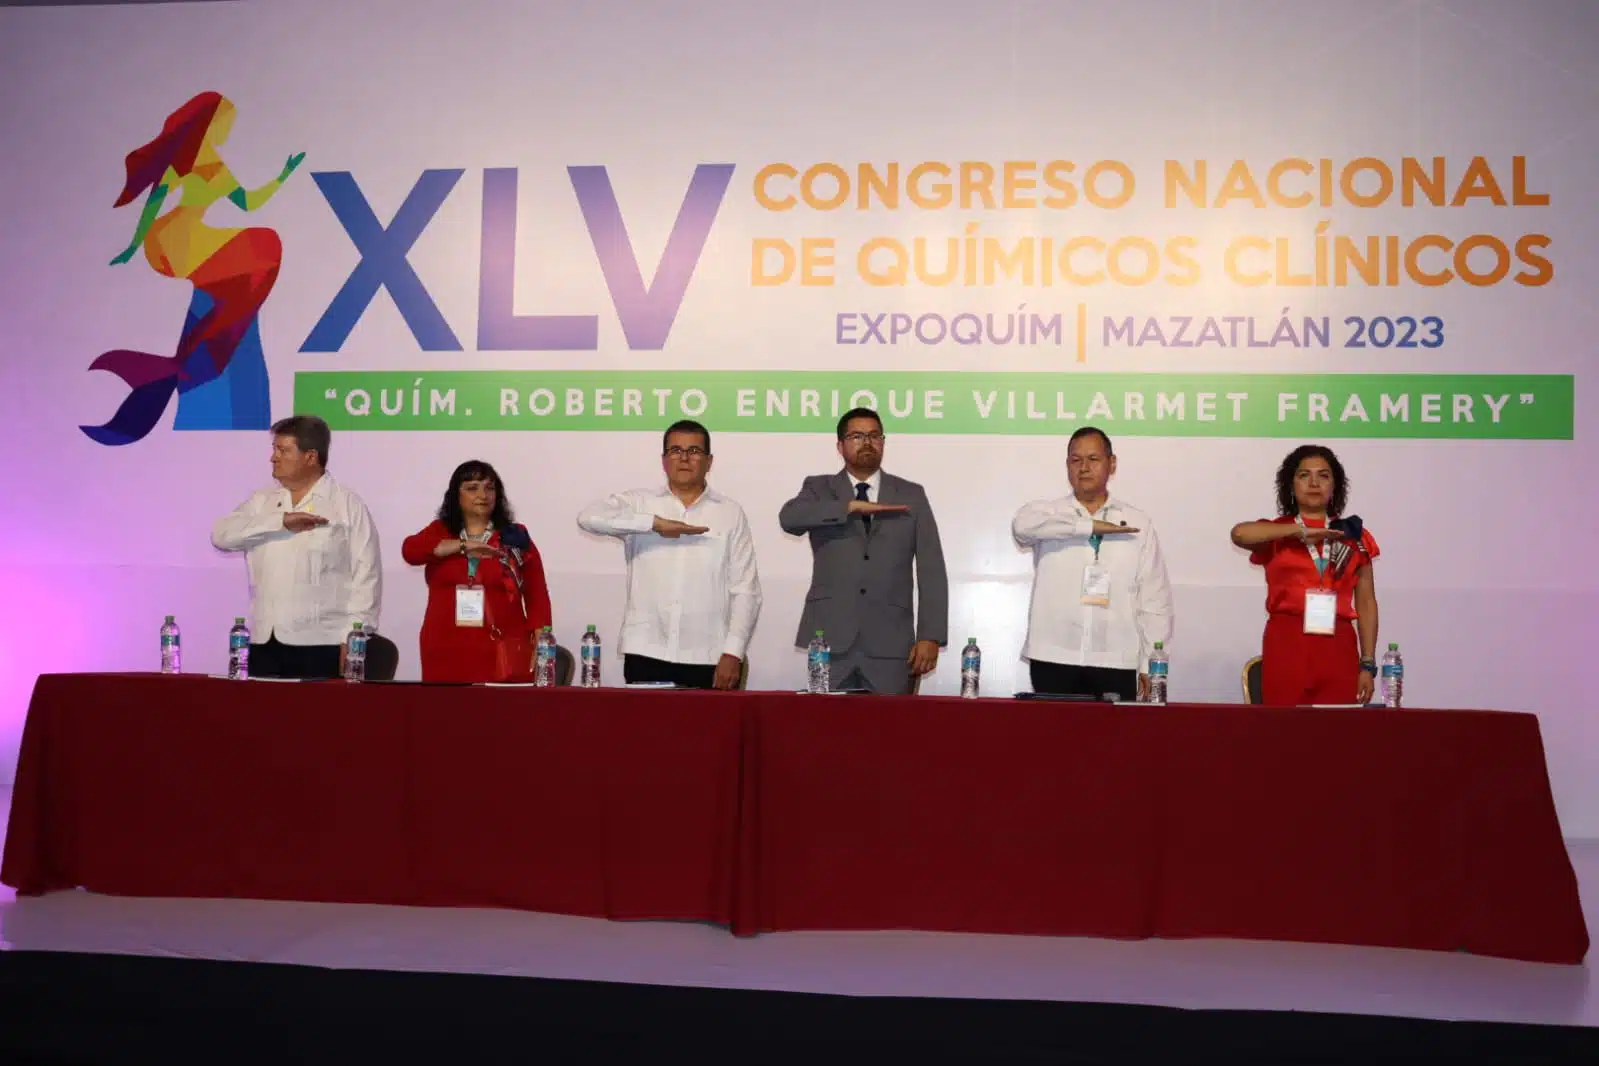 XLV Congreso Nacional de Químicos Clínicos